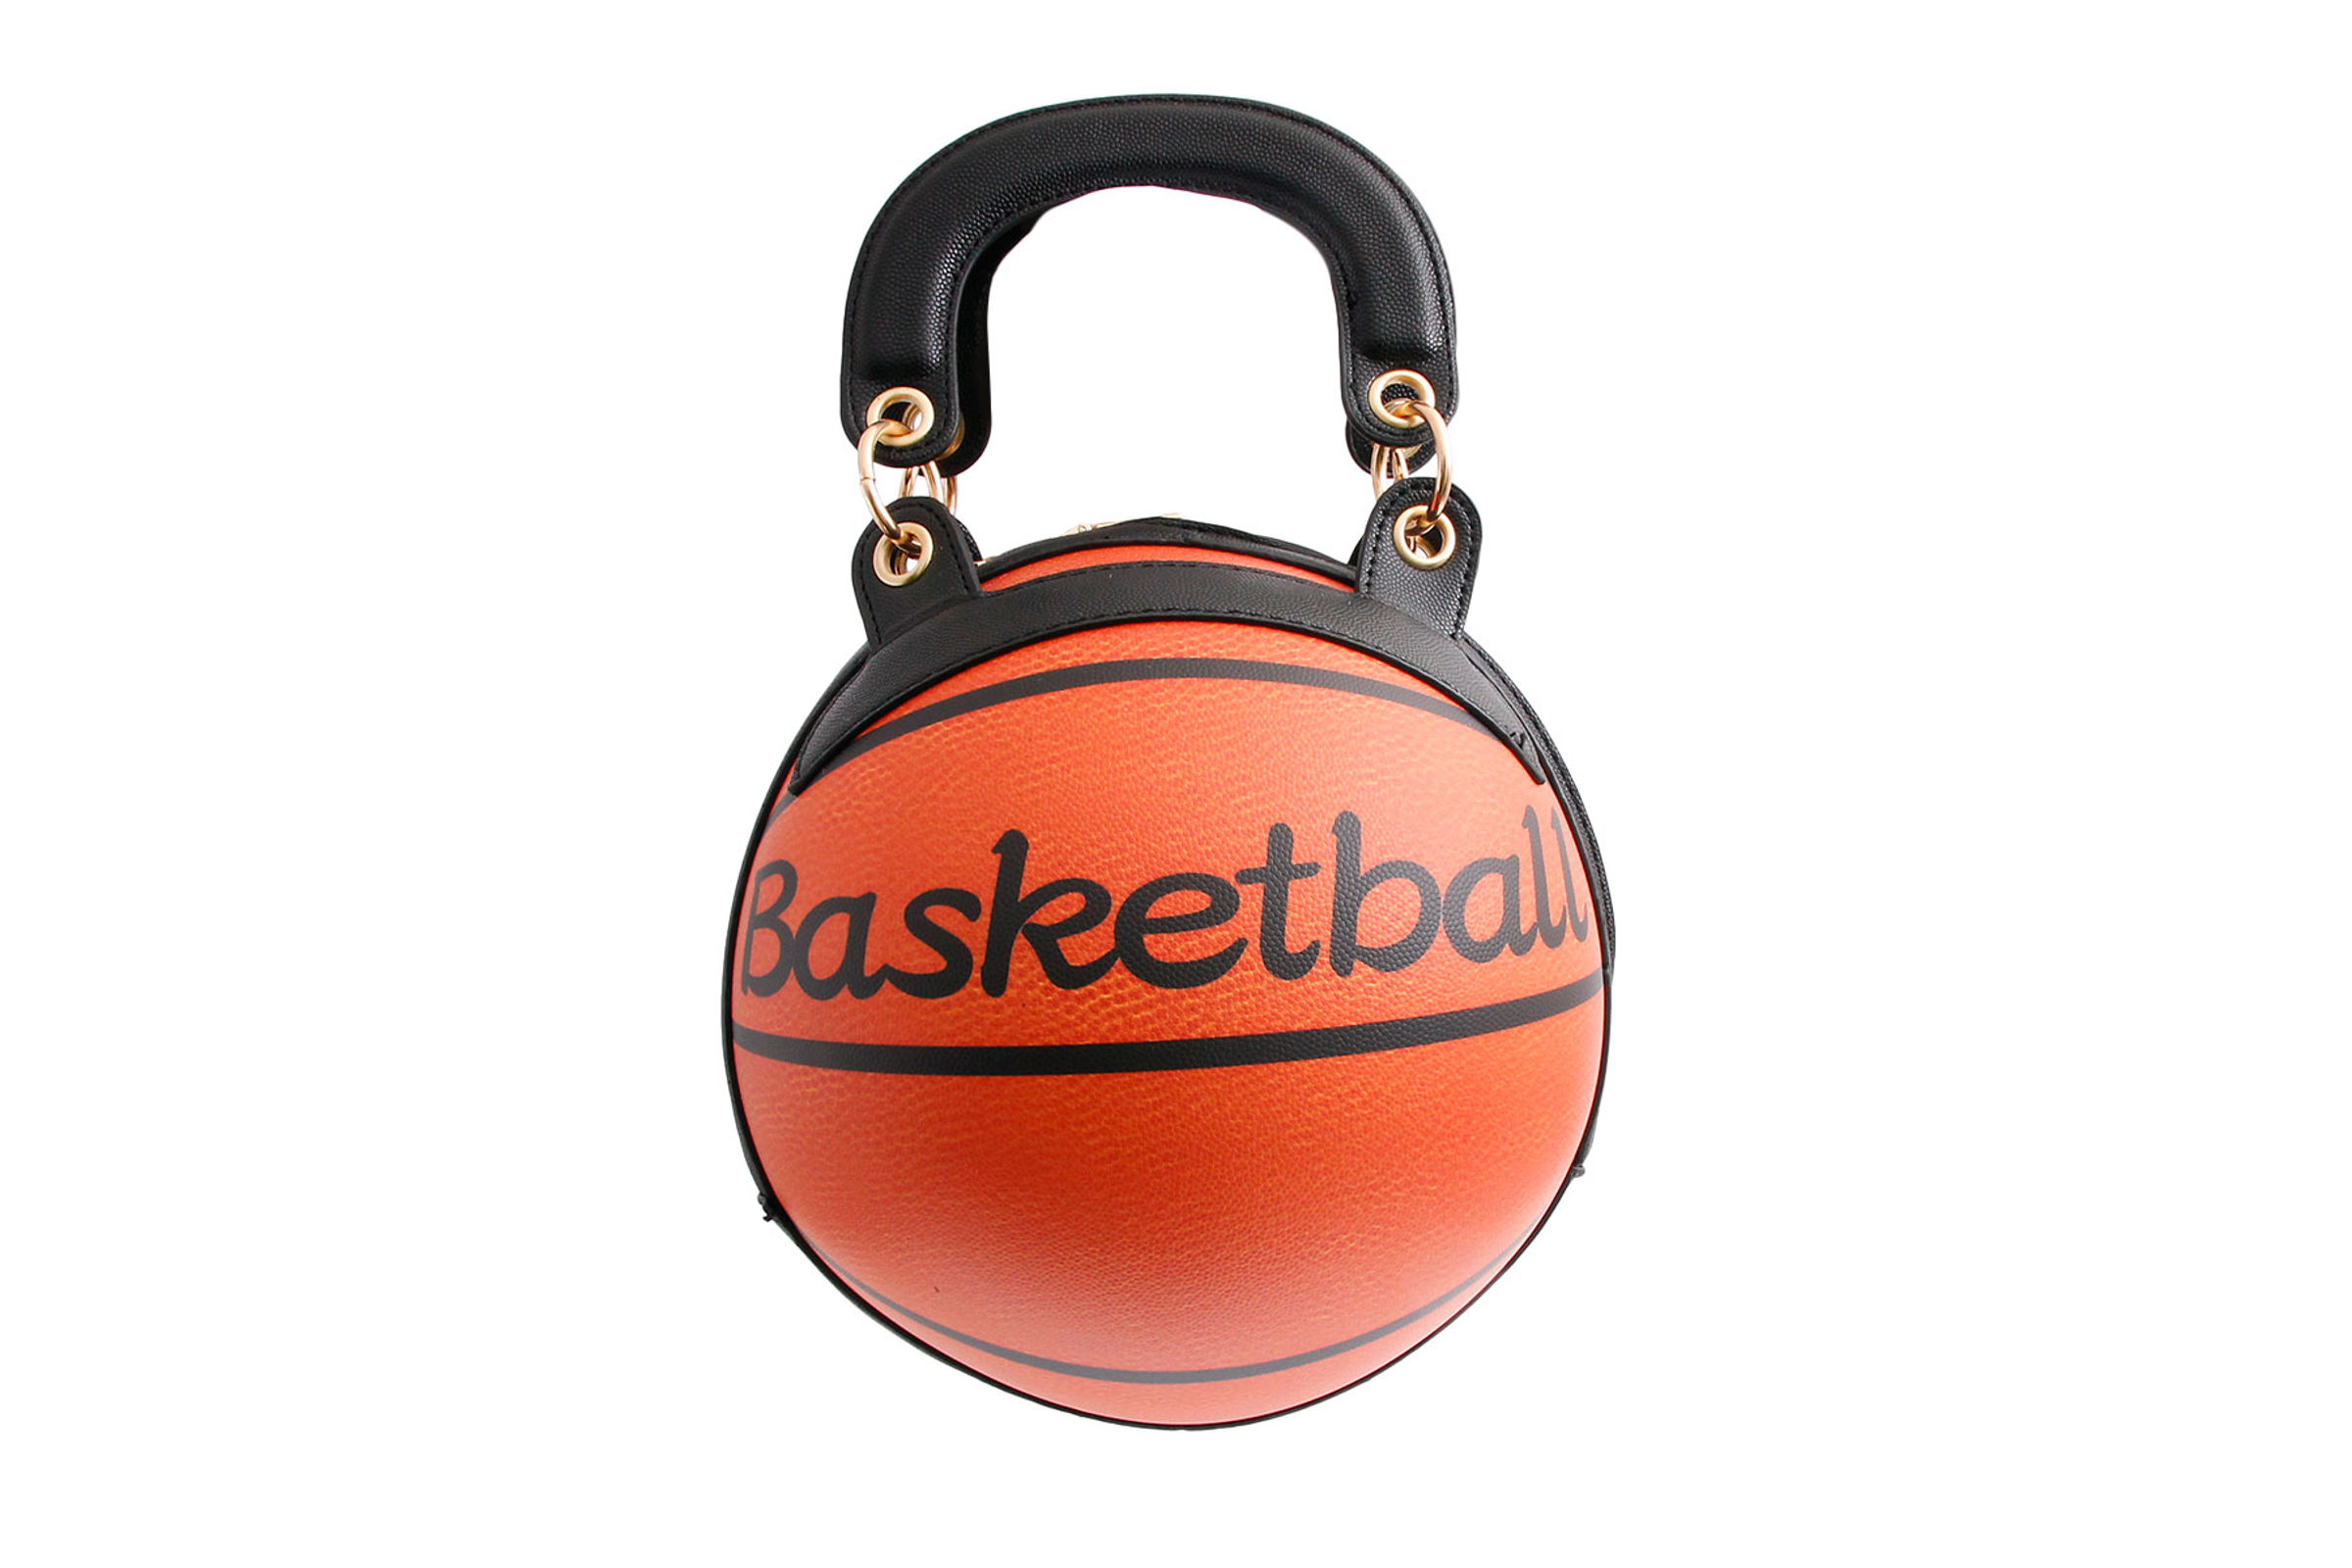 Obovoid Women's Basketball Bag Basketball-Shaped India | Ubuy